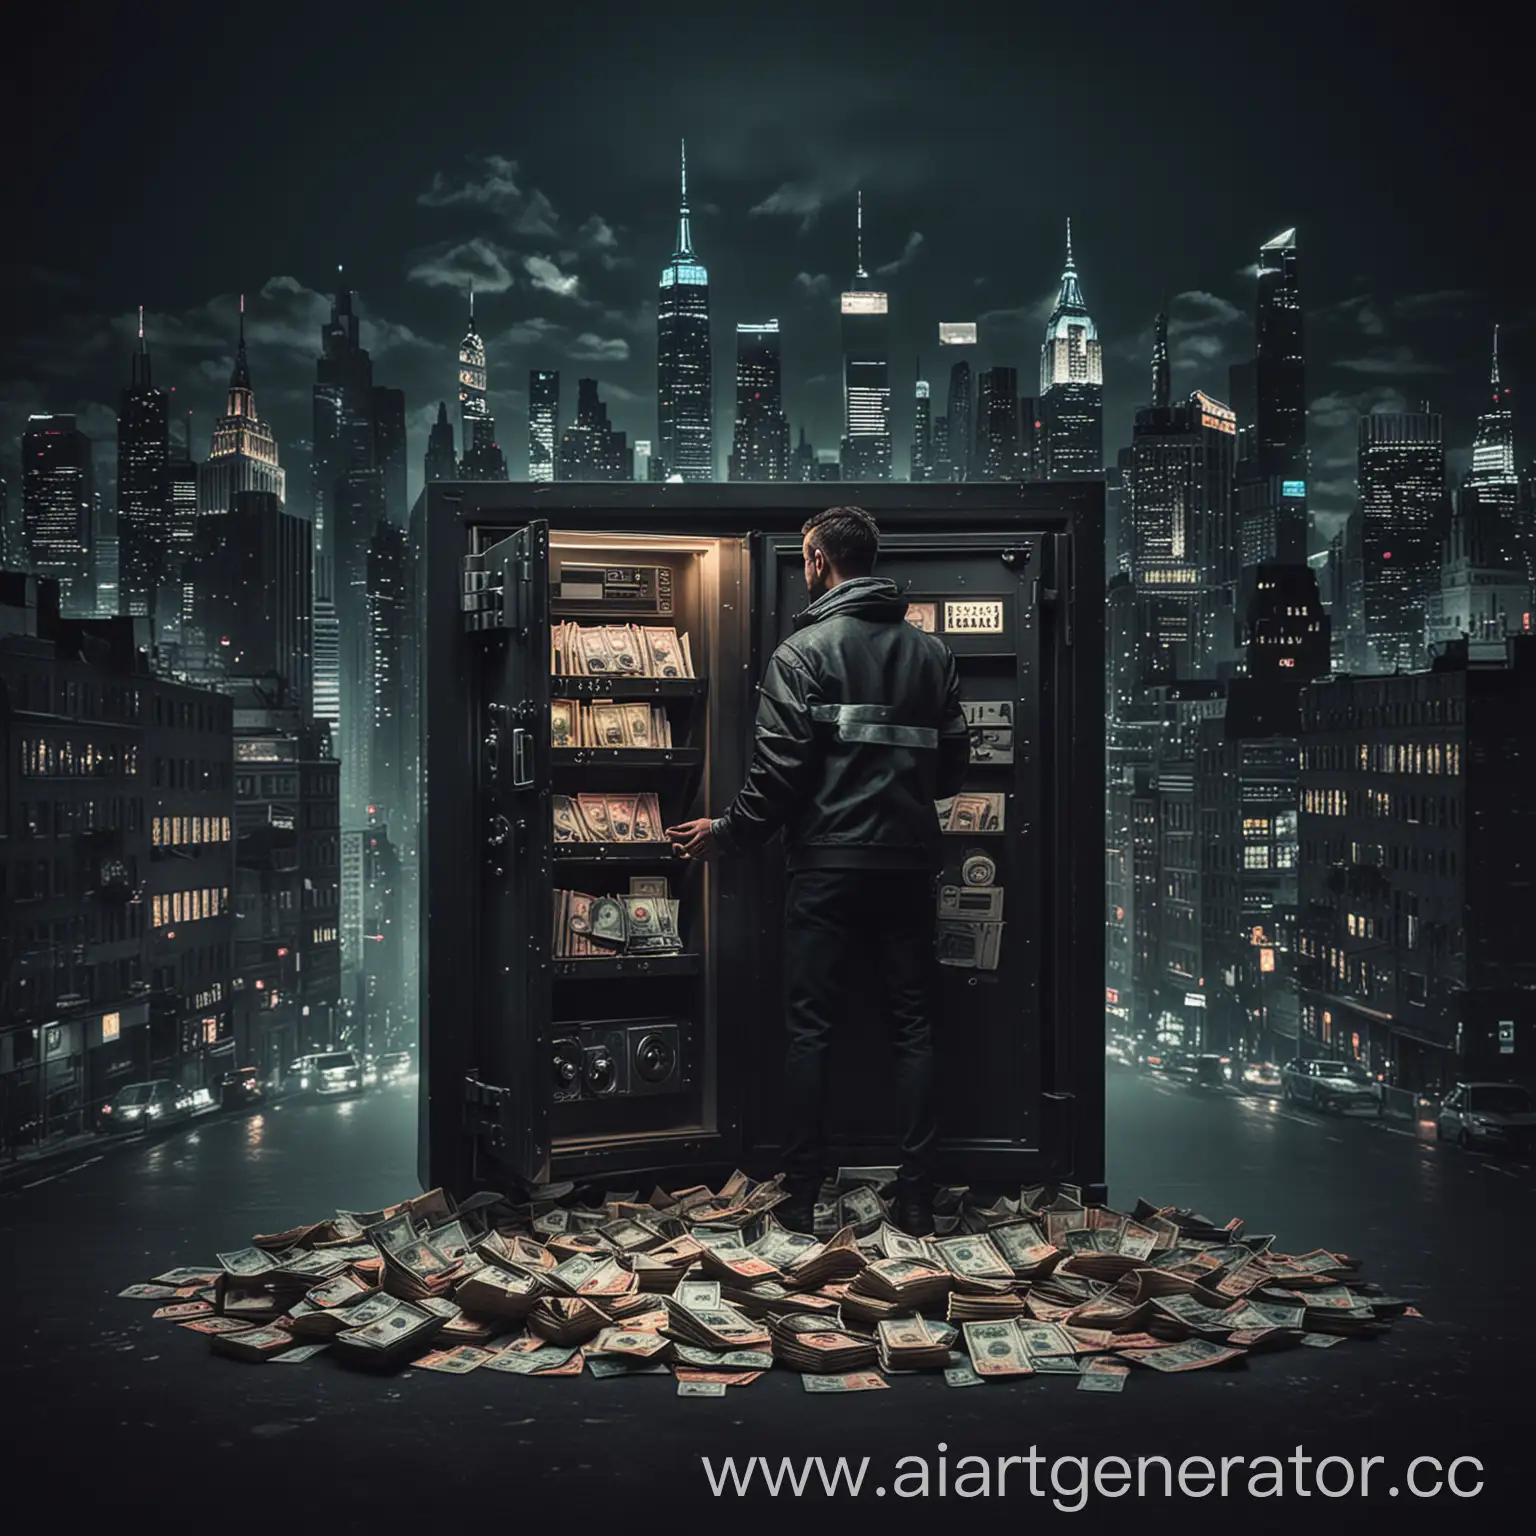 Мужчина стоит с деньгами в руках, рядом с сейфом, в котором куча банкнот. На фоне красивый темный город в неоновом стиле, похожий на Нью-Йорк